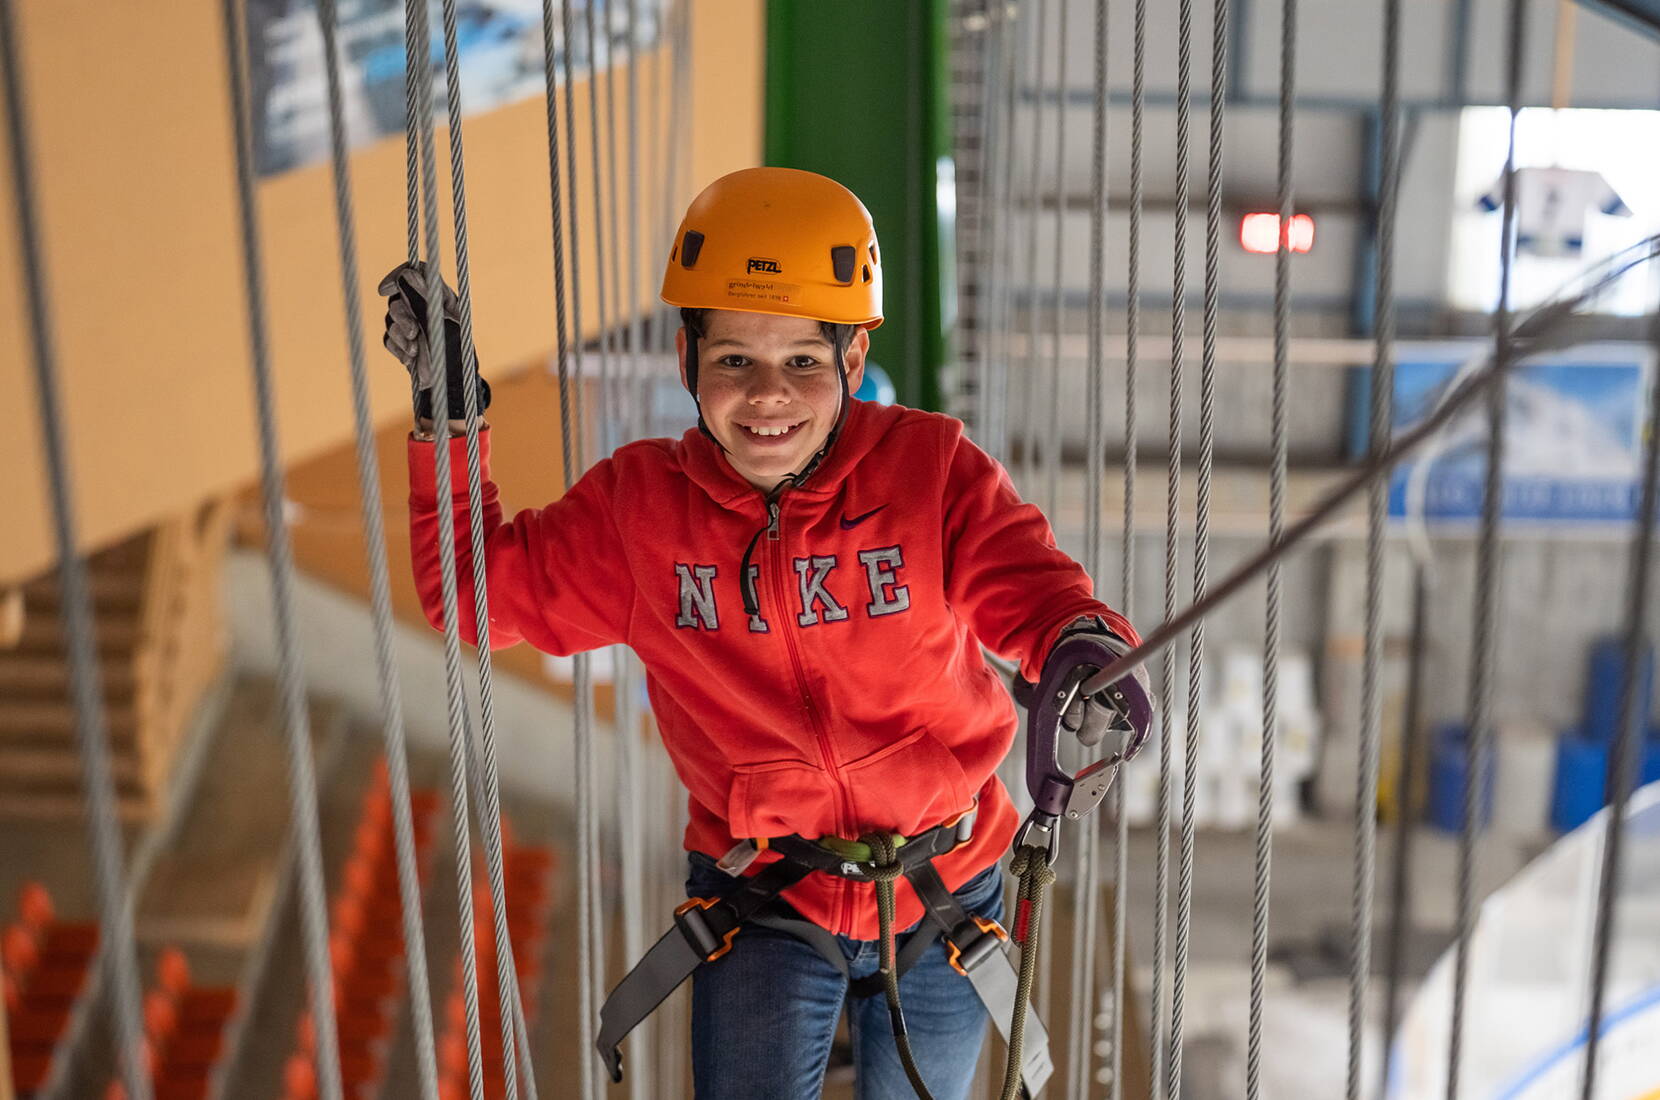 Excursion en famille au parc d'escalade à cordes indoor de Grindelwald. Sous le toit de la patinoire, petits et grands peuvent se balancer et grimper sur des éléments plus ou moins branlants et passionnants, et ce par tous les temps : sec et sans vent en hiver, frais en été!